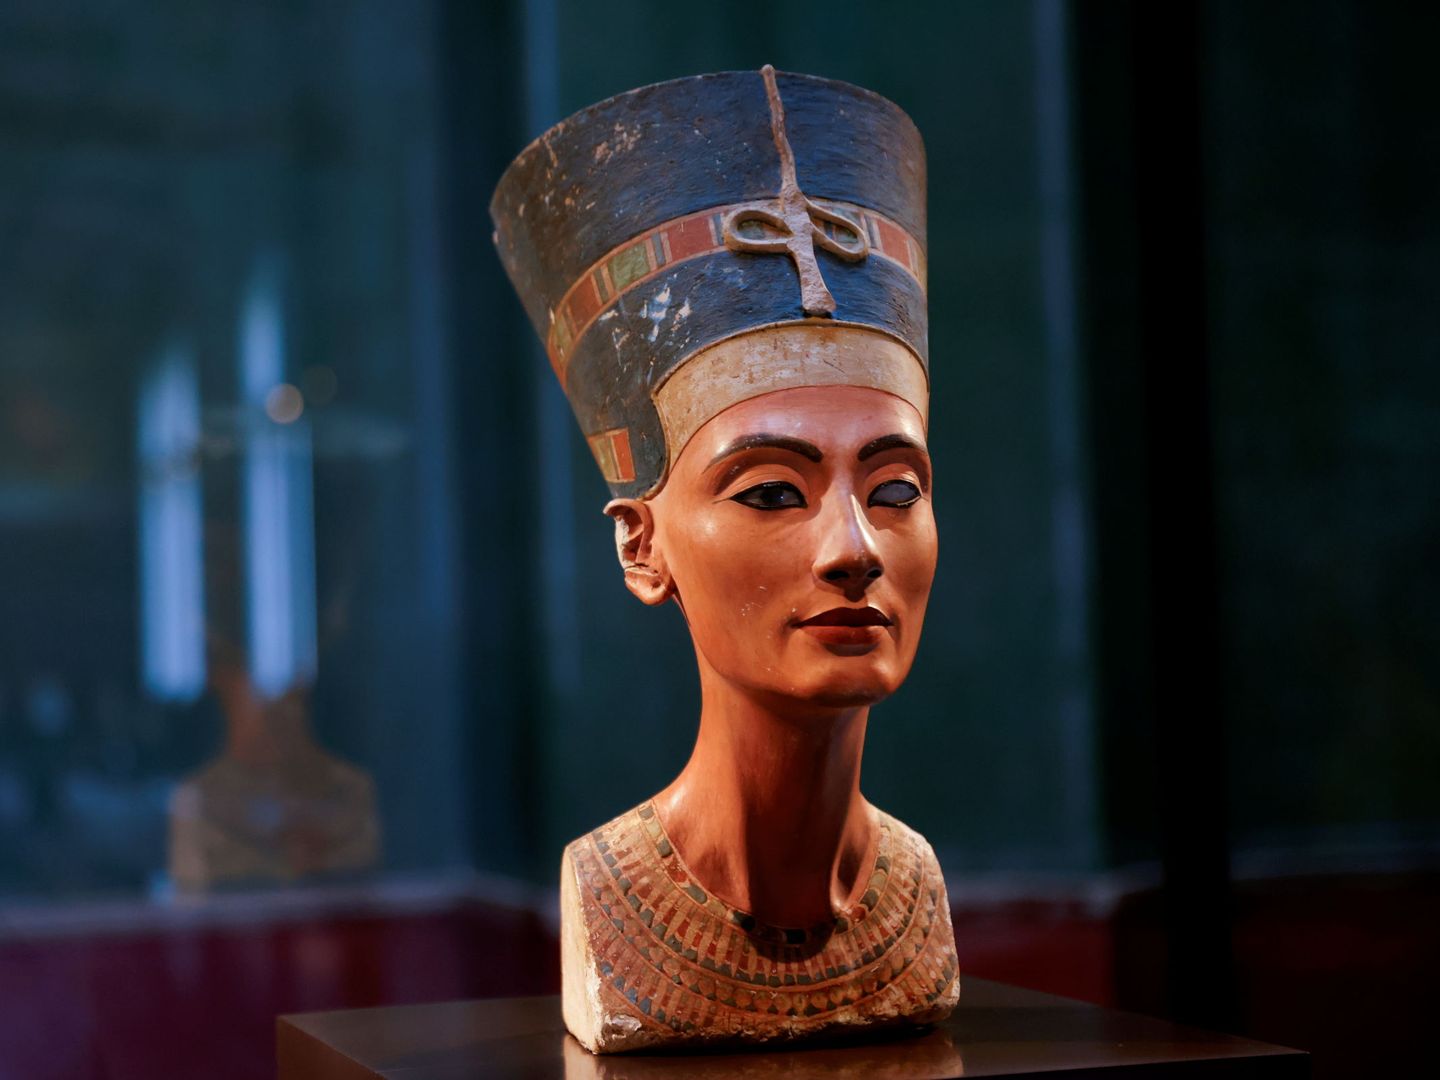 El busto de Nefertiti expuesto en los Museos Estatales de Berlín. (Reuters/Fabrizio Bensch)